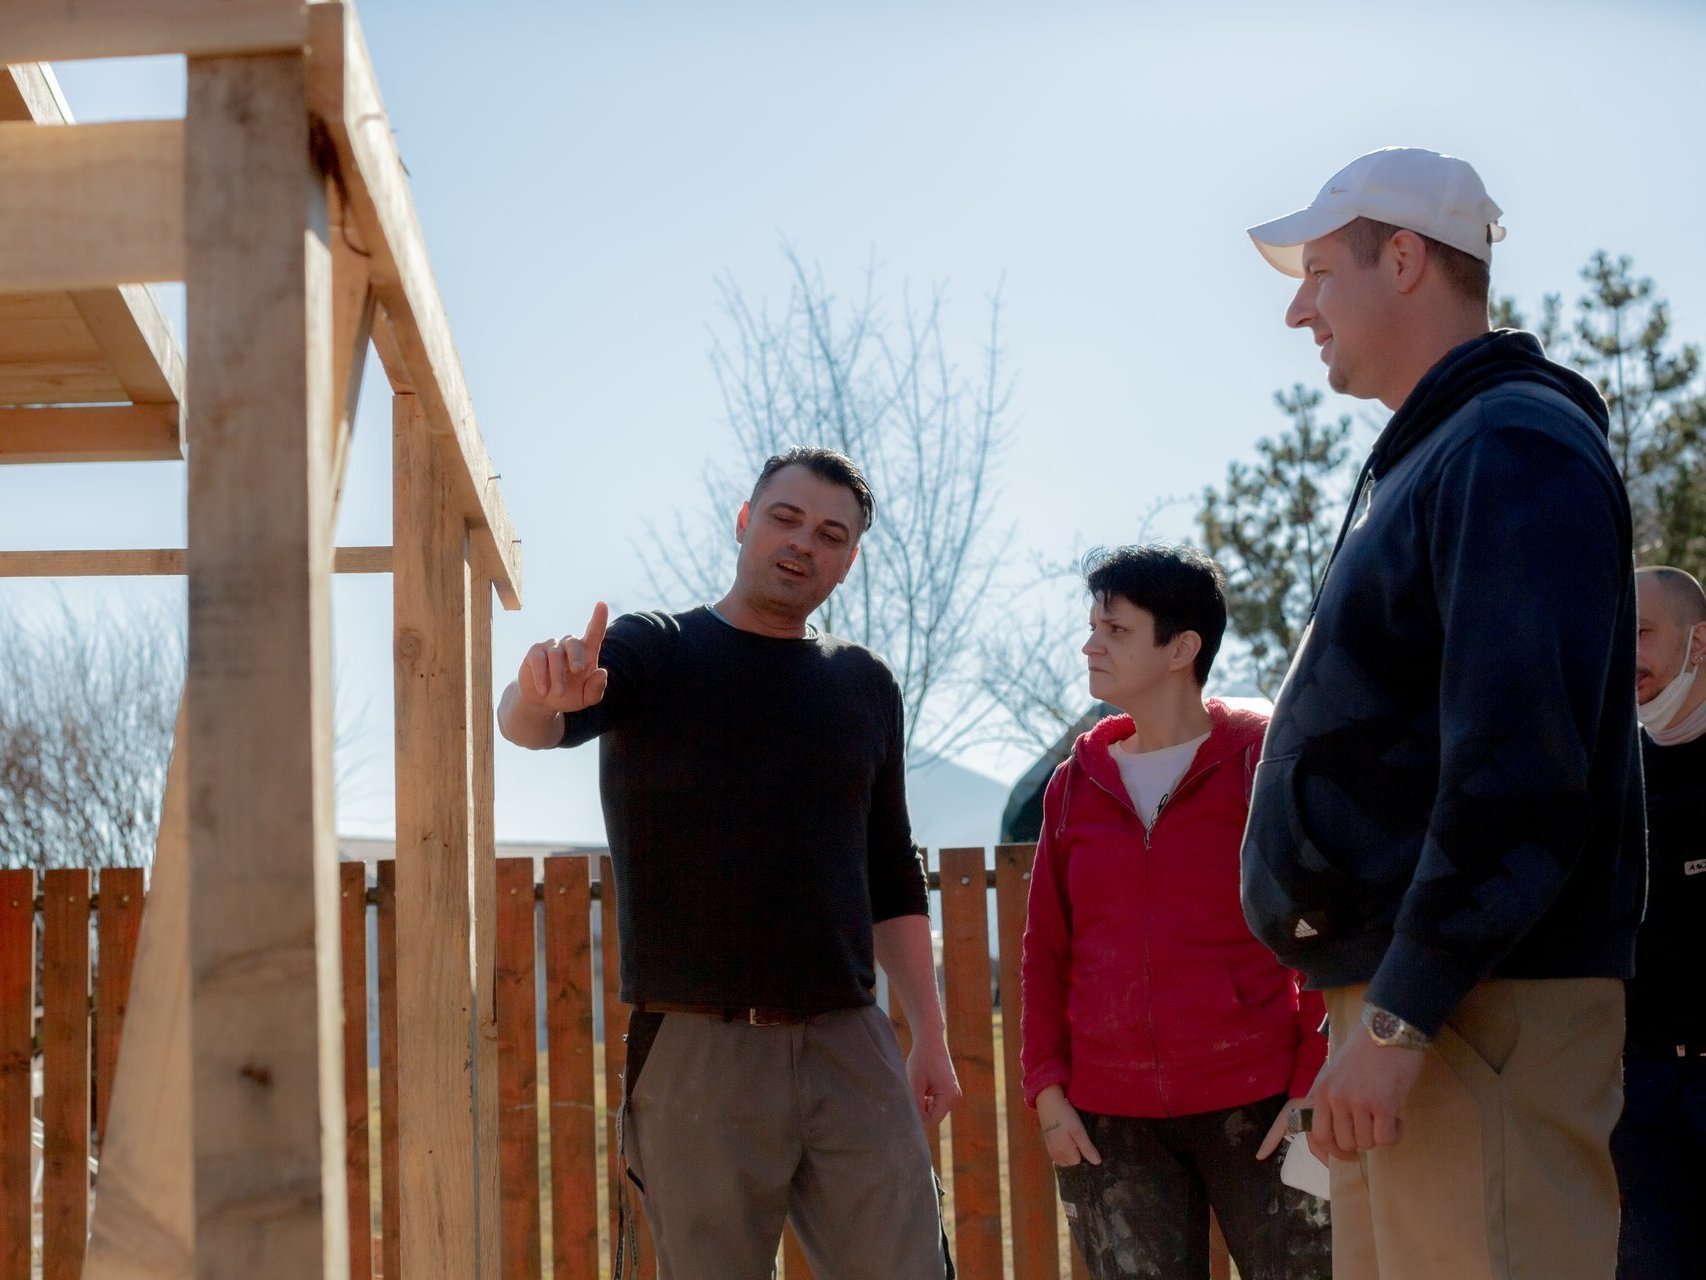 Eine Frau und drei Männer stehen vor einer Holzkonstruktion - ein Mann erklärt